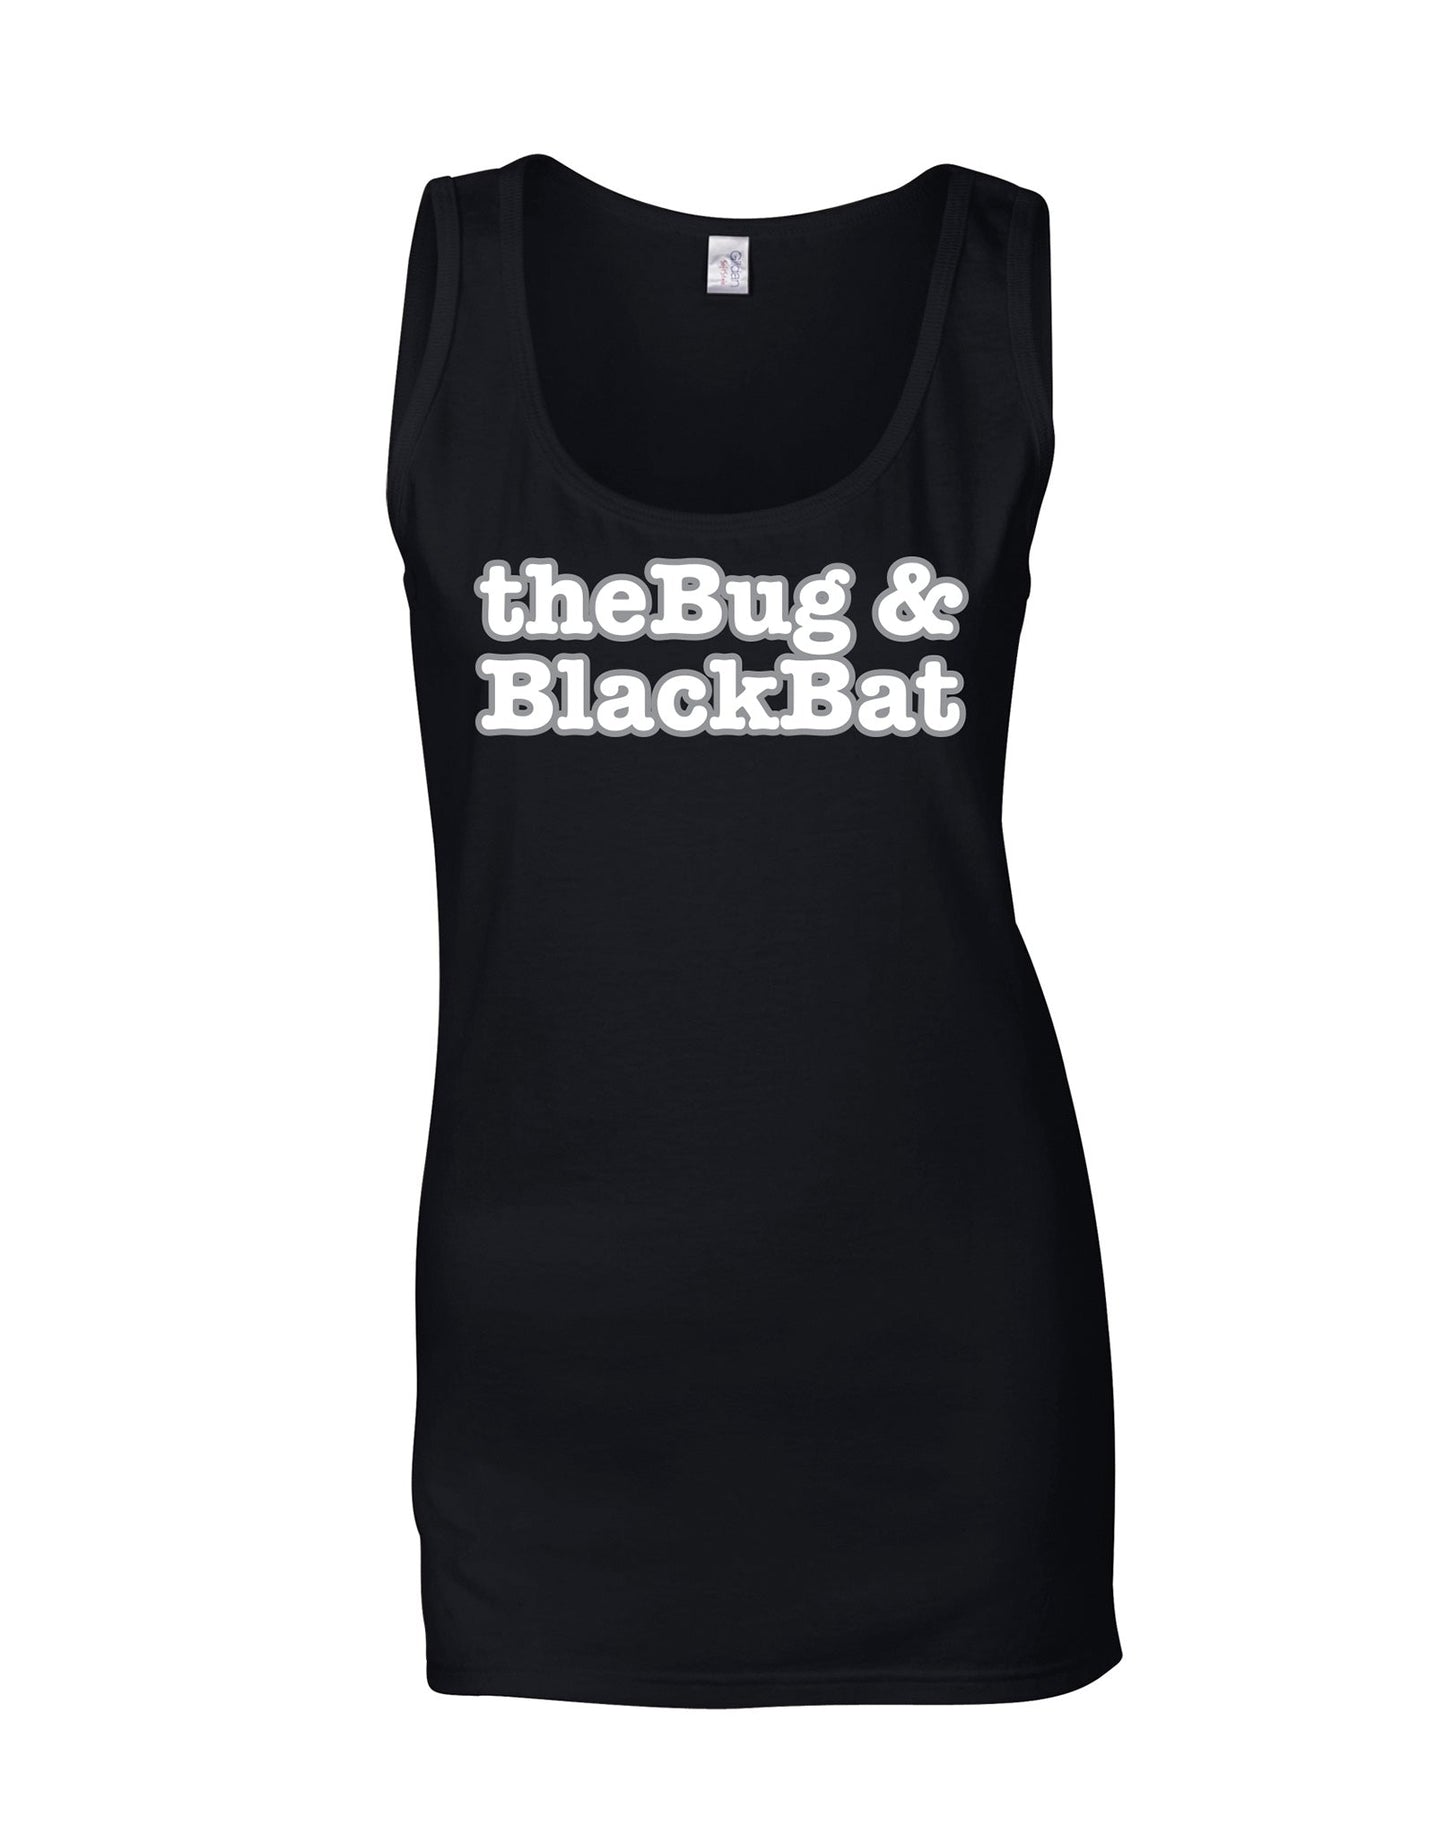 The Bug & Black Bat ladies fit vest - various colours - Dirty Stop Outs